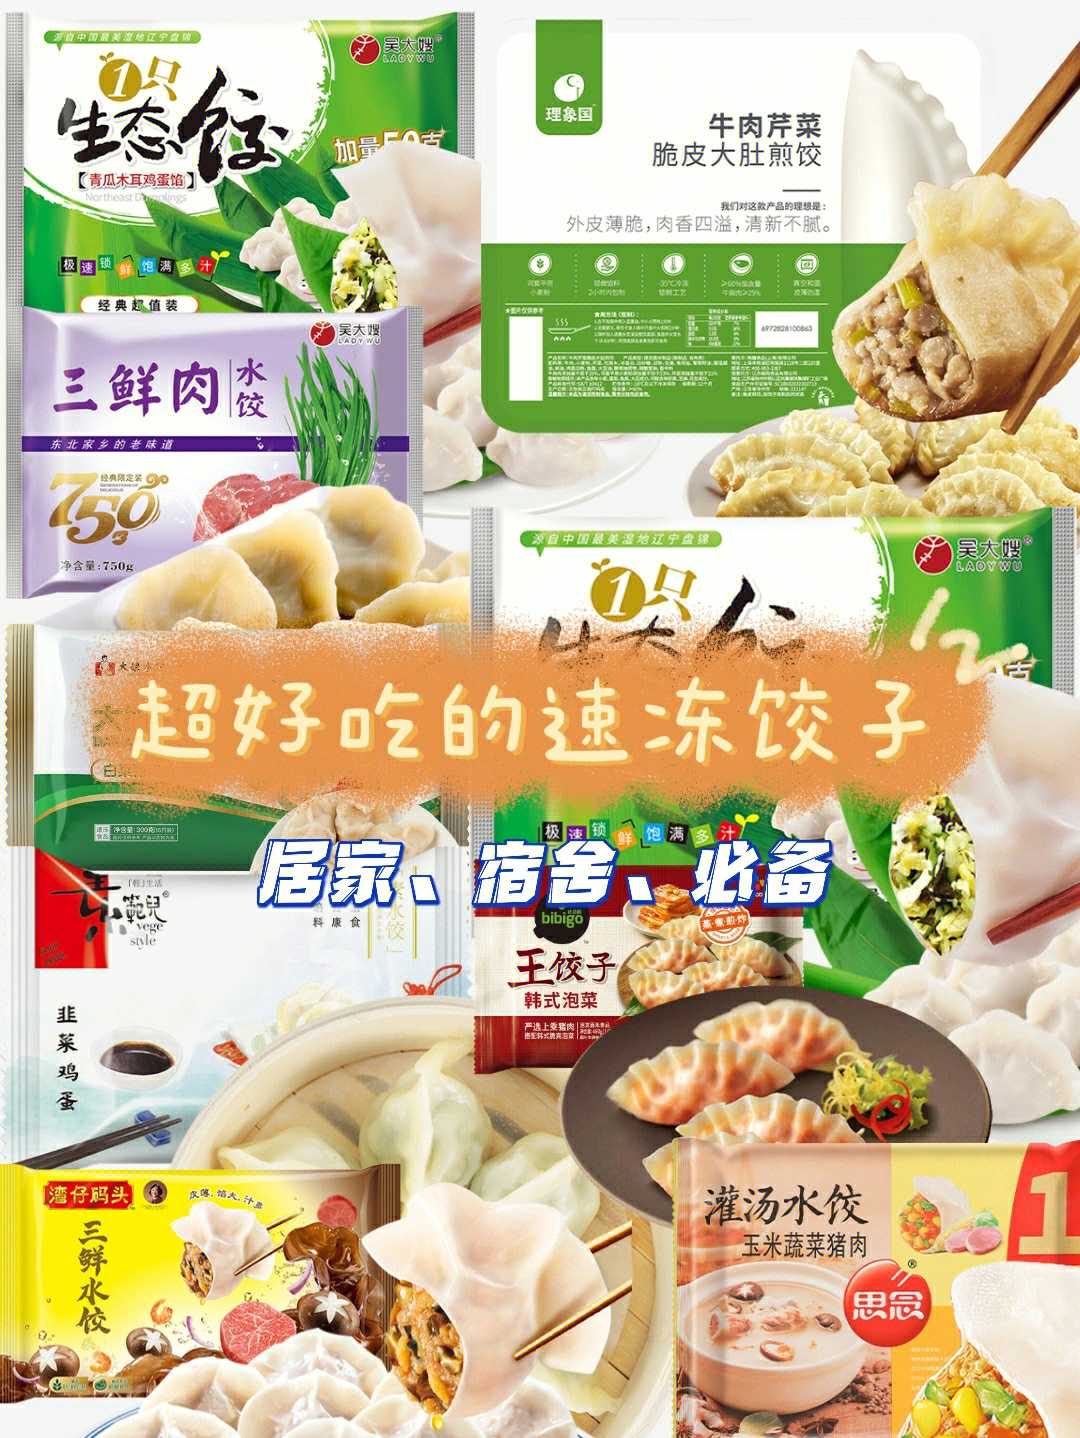 9款超好吃的速冻饺子丨超市看到一定要拿